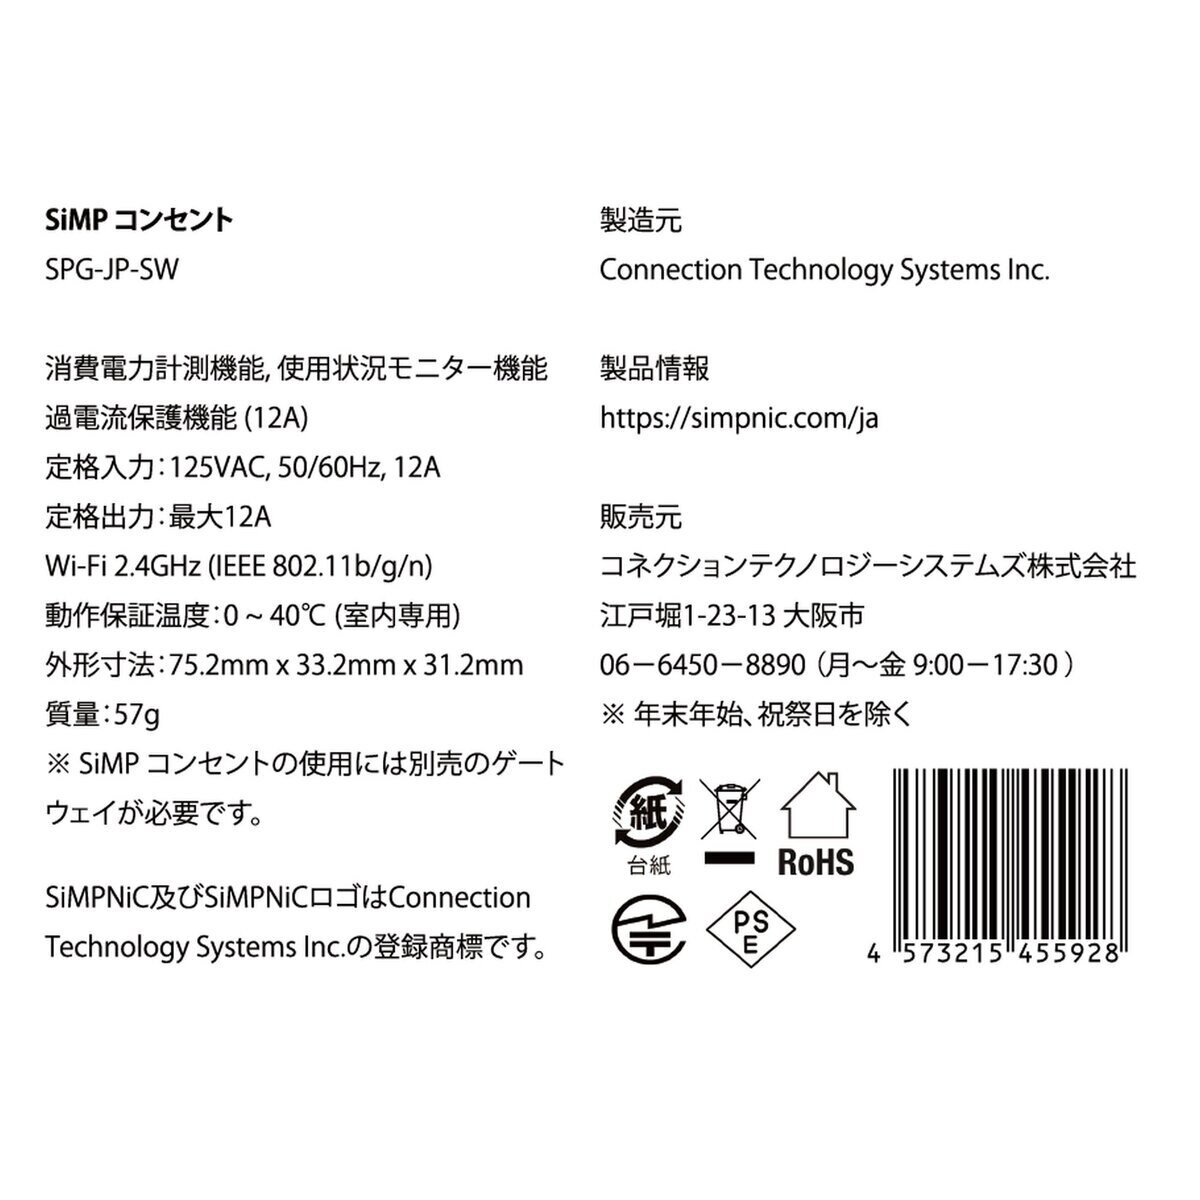 SiMPNiC スマートコンセント x 3個セット KIT-02-JPK | Costco Japan